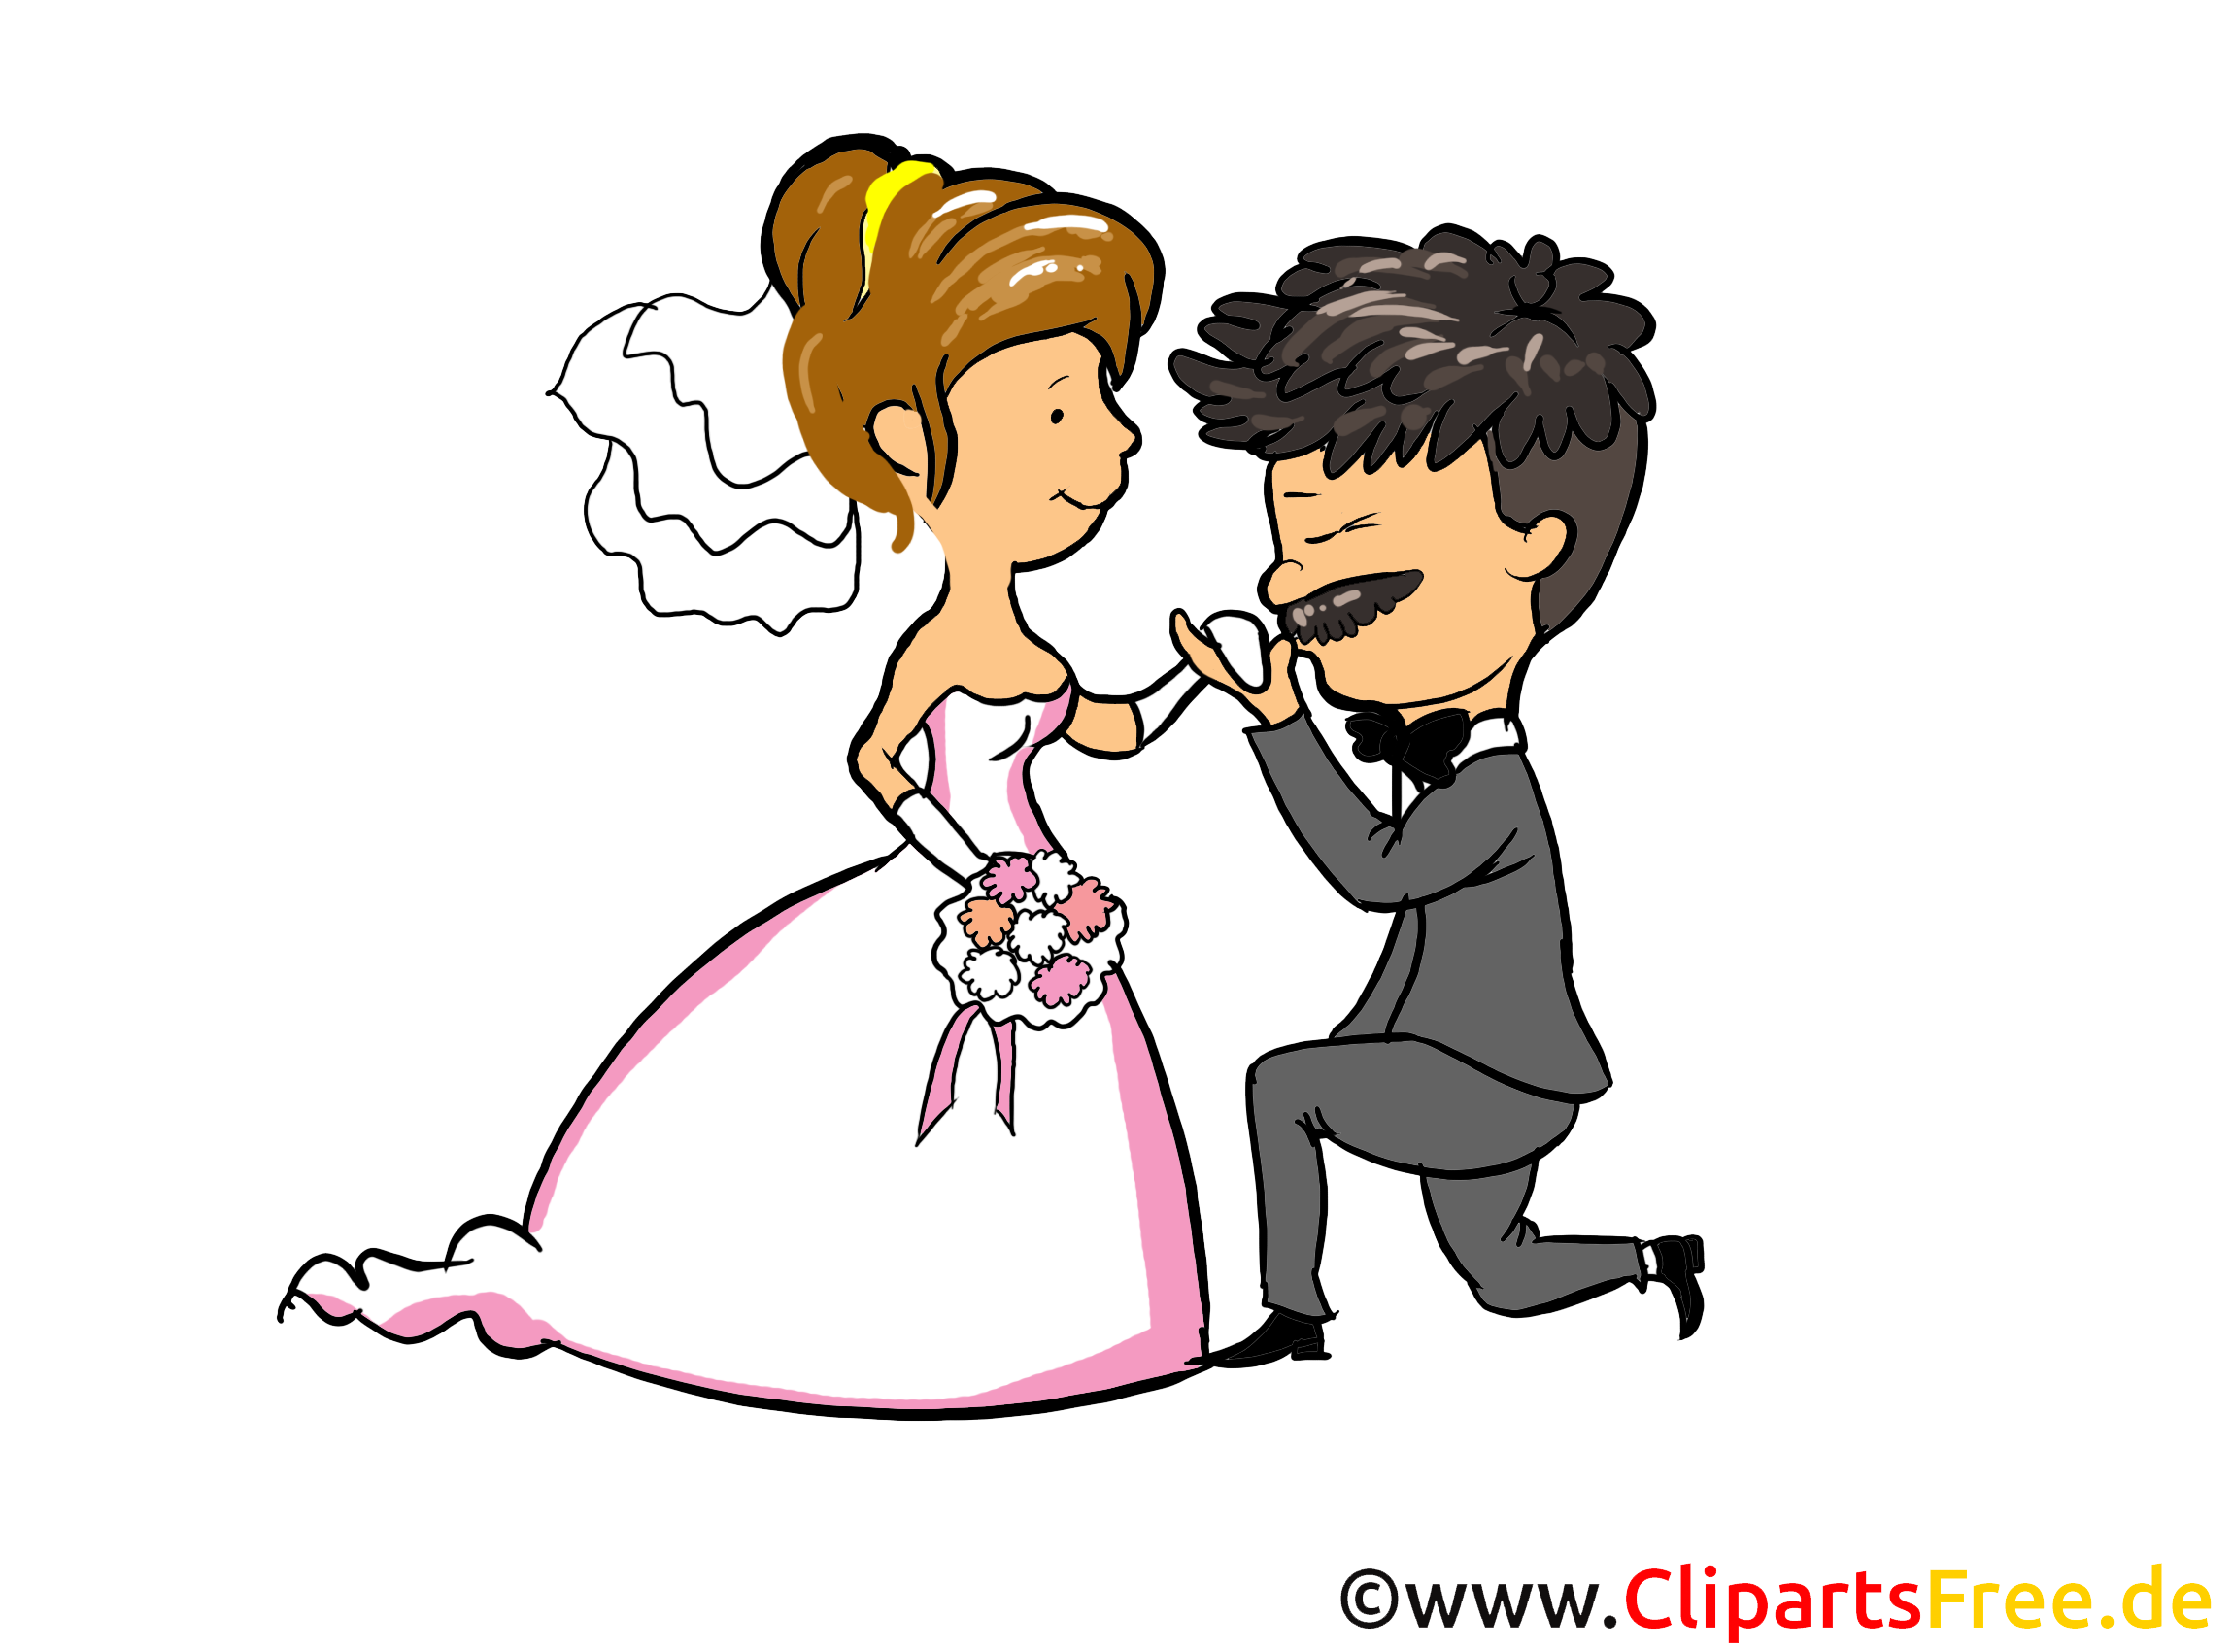 Dessin Couple Mariage à Télécharger Mariage Dessin Picture Image Graphic Clip Art